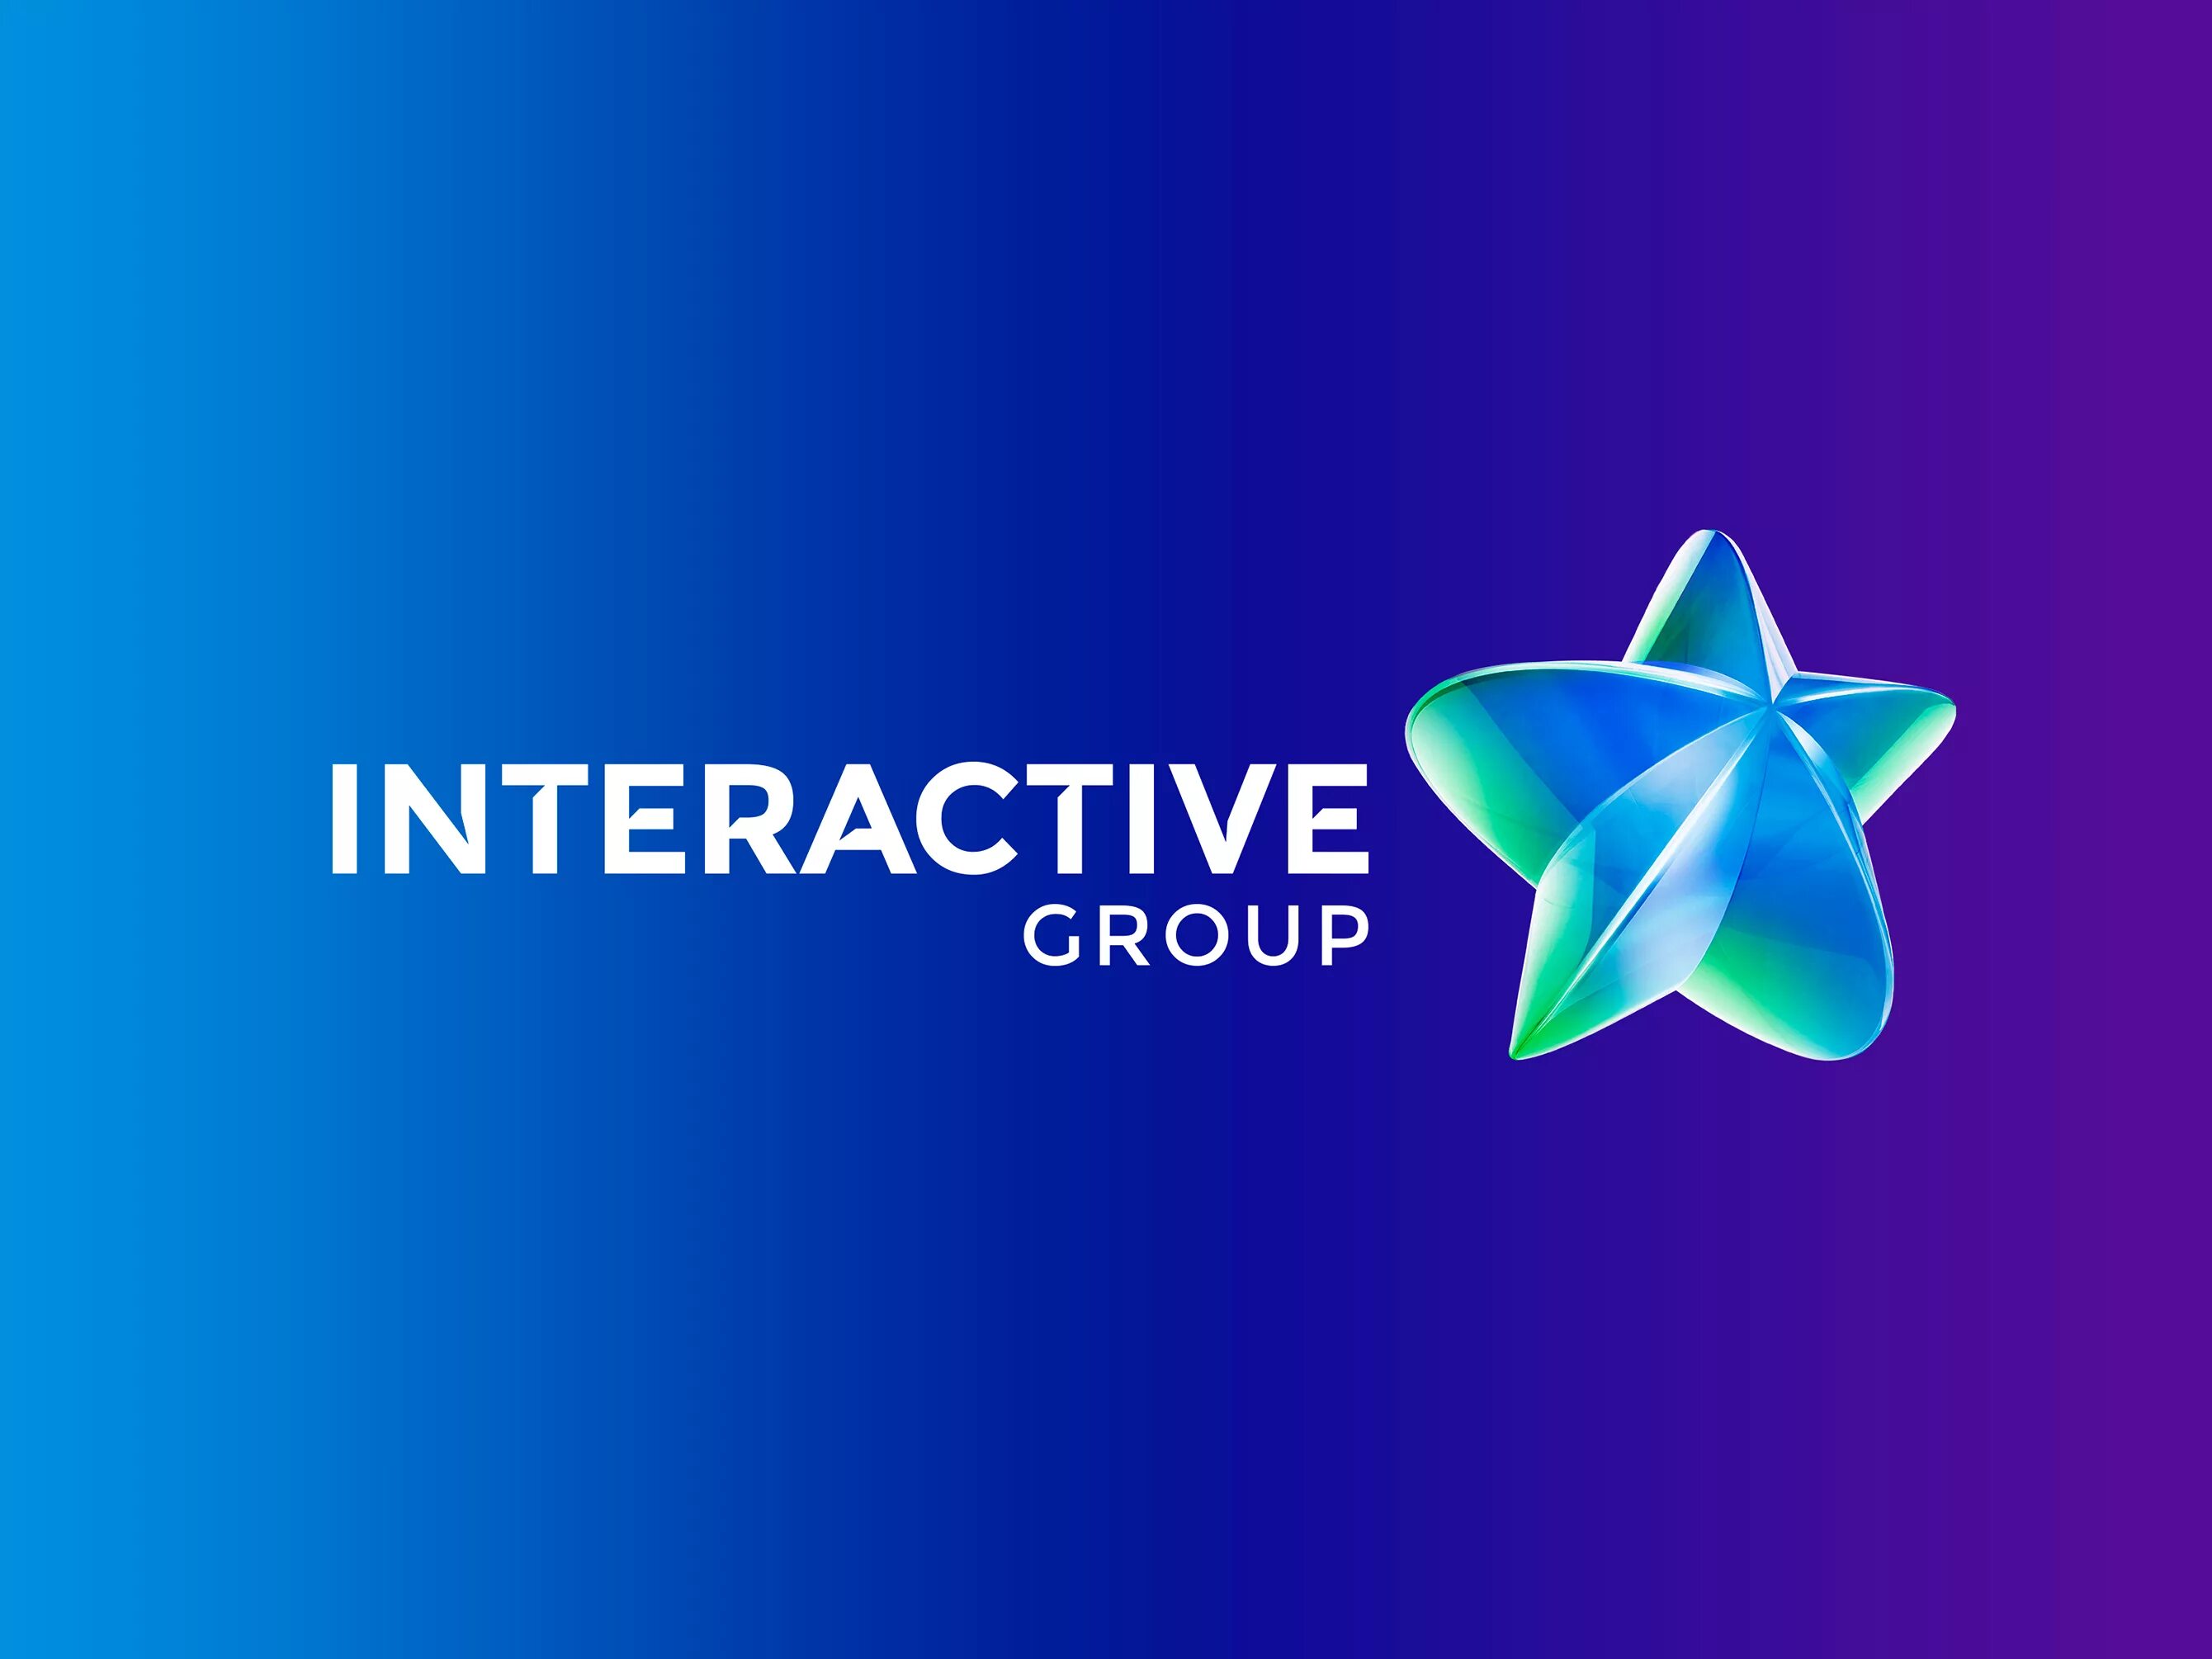 Interactive com. Interactive Group. Interactive группа. Лого интерактивный. Design Group logo.